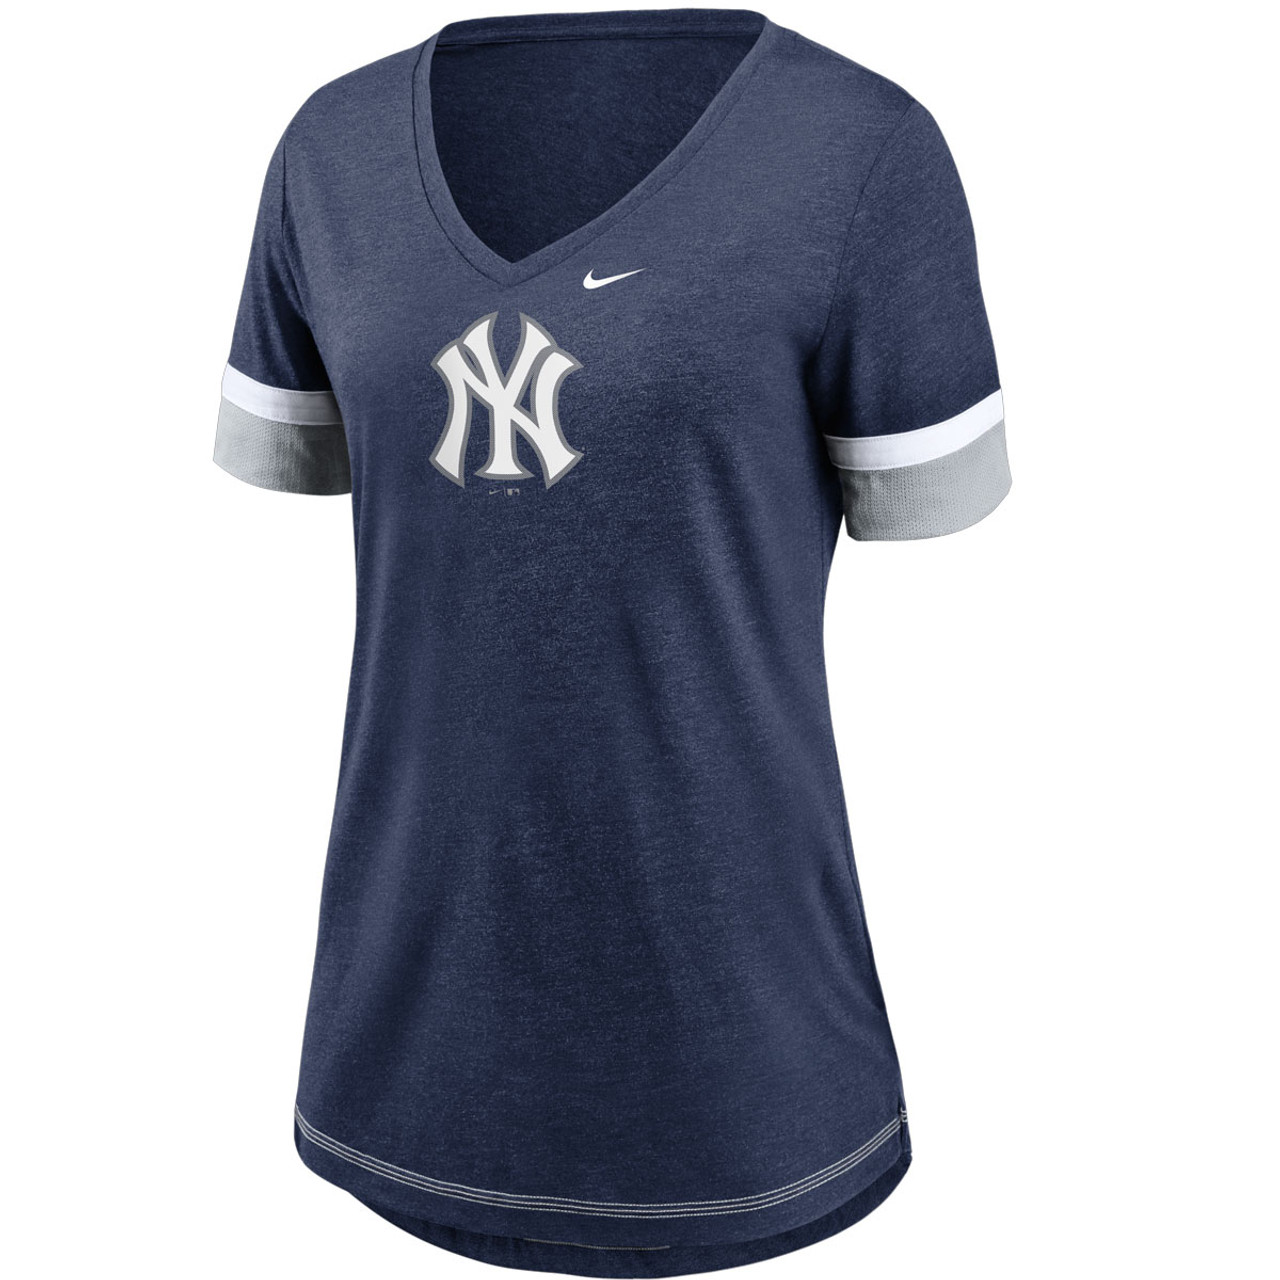 MLB New York Yankees (Derek Jeter) Women's T-Shirt.